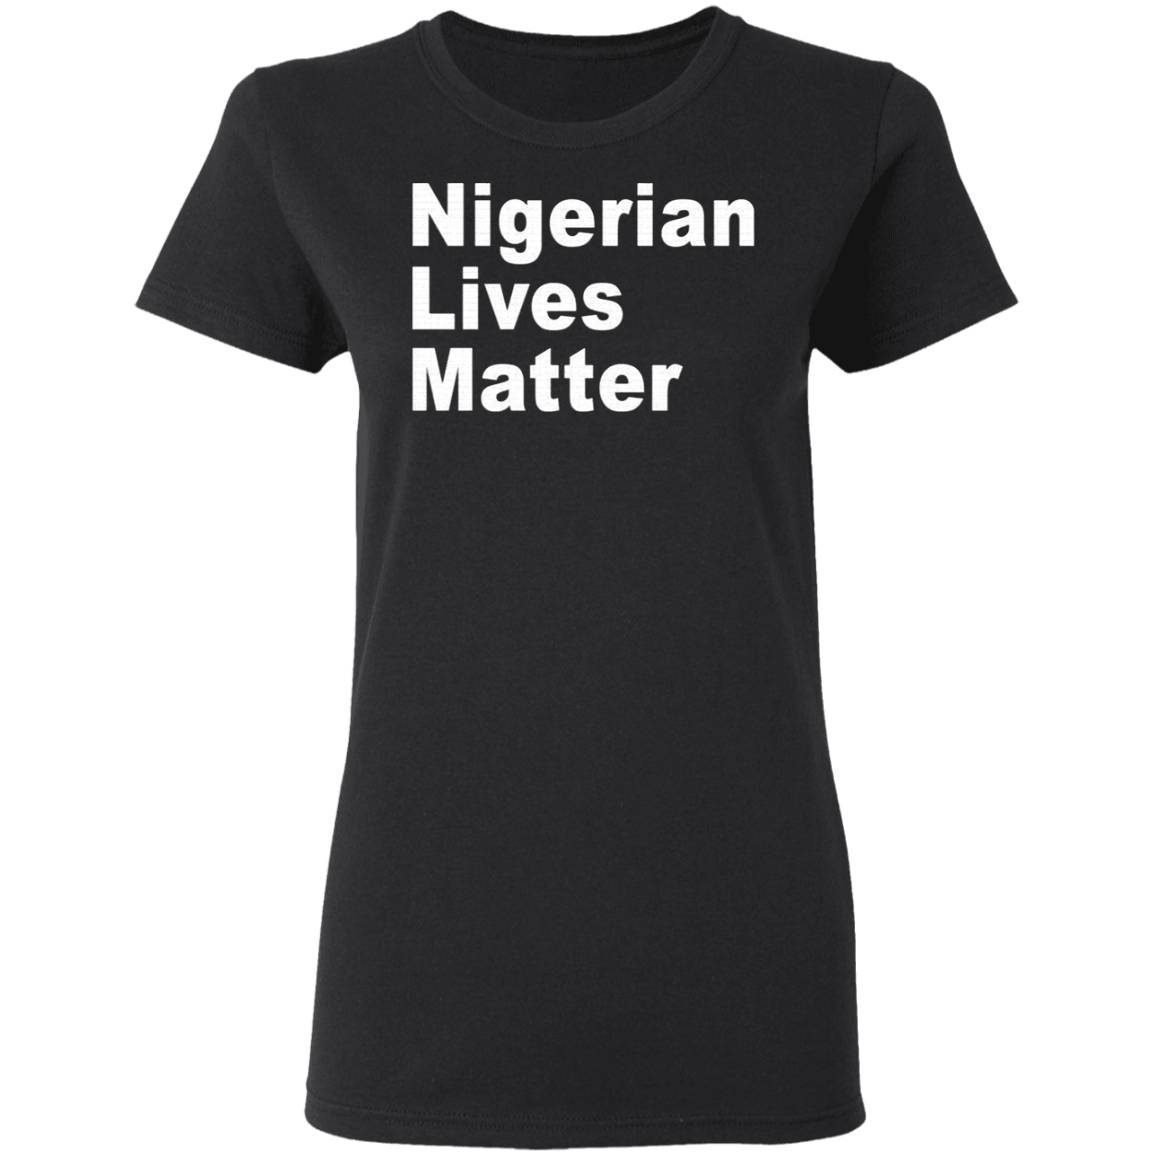 Nigerian Lives Matter shirt 2